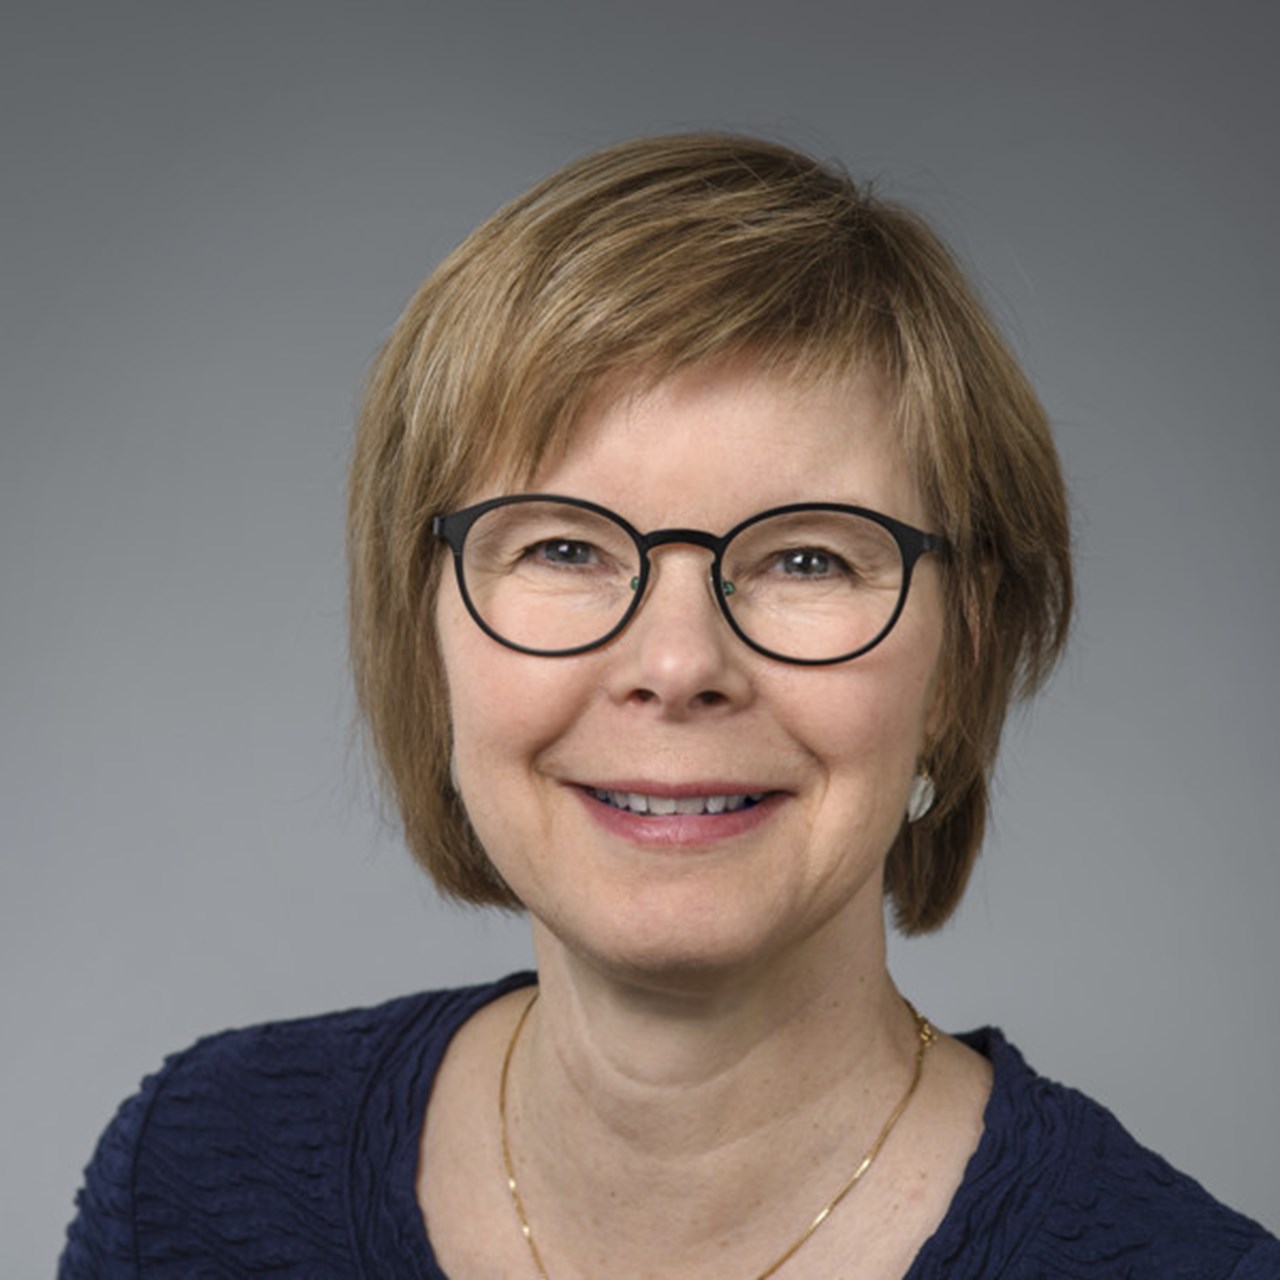 Porträtt på Ewa Lampa, anknuten som tandläkare vid Institutionen för odontologi, Umeå universitet.